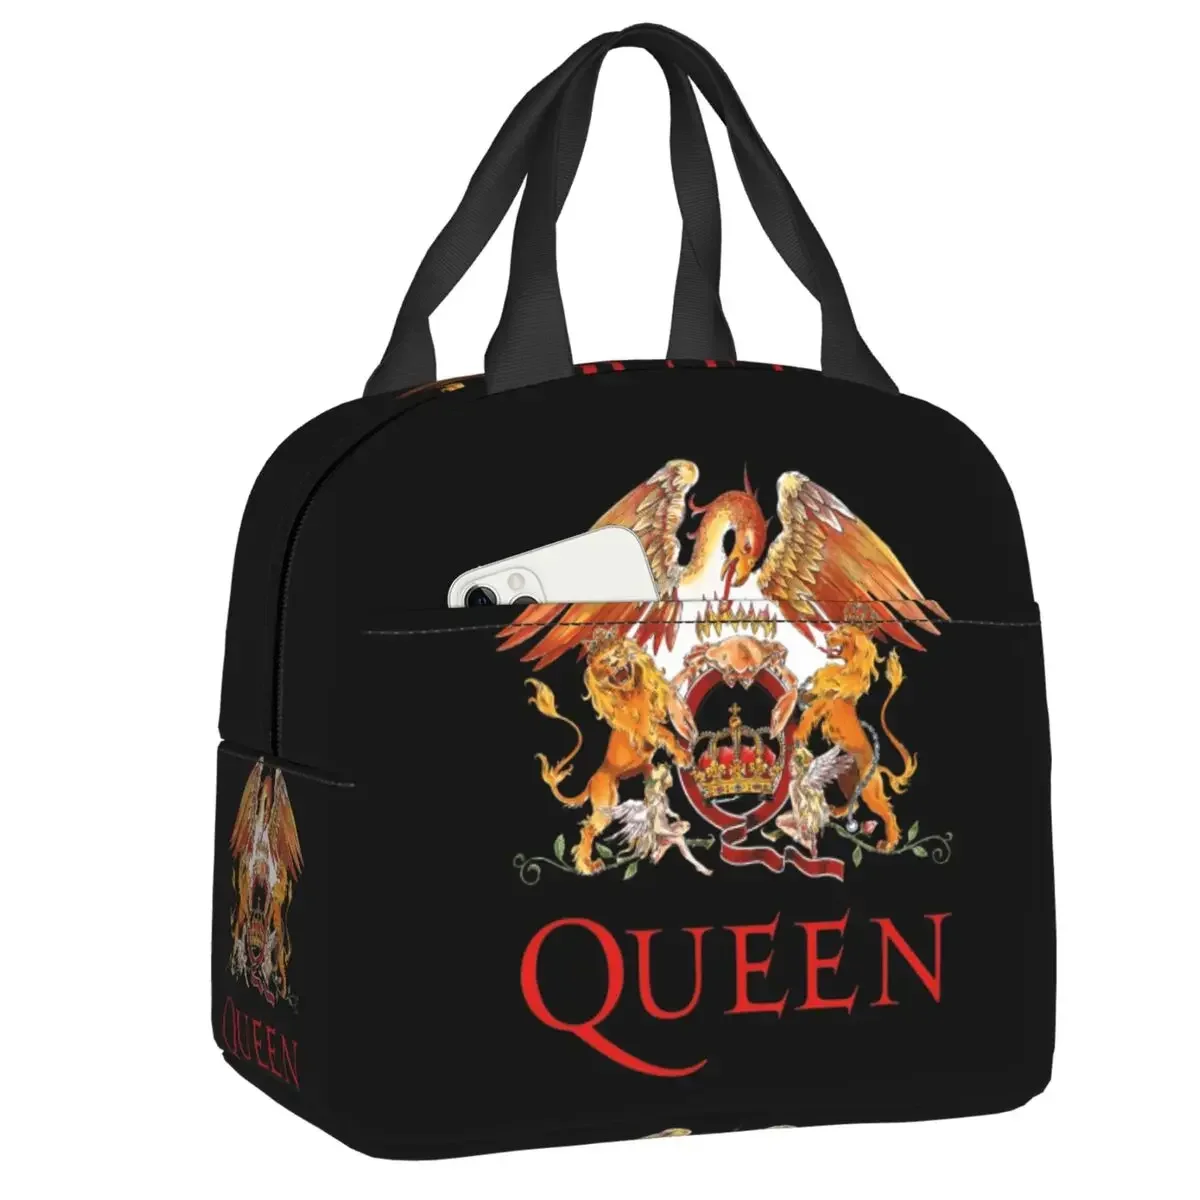 

Термоизолированная сумка для ланча Rock Band Queen, Женский Портативный Ланч-бокс со ртутью, для работы, школы, путешествий, пикника